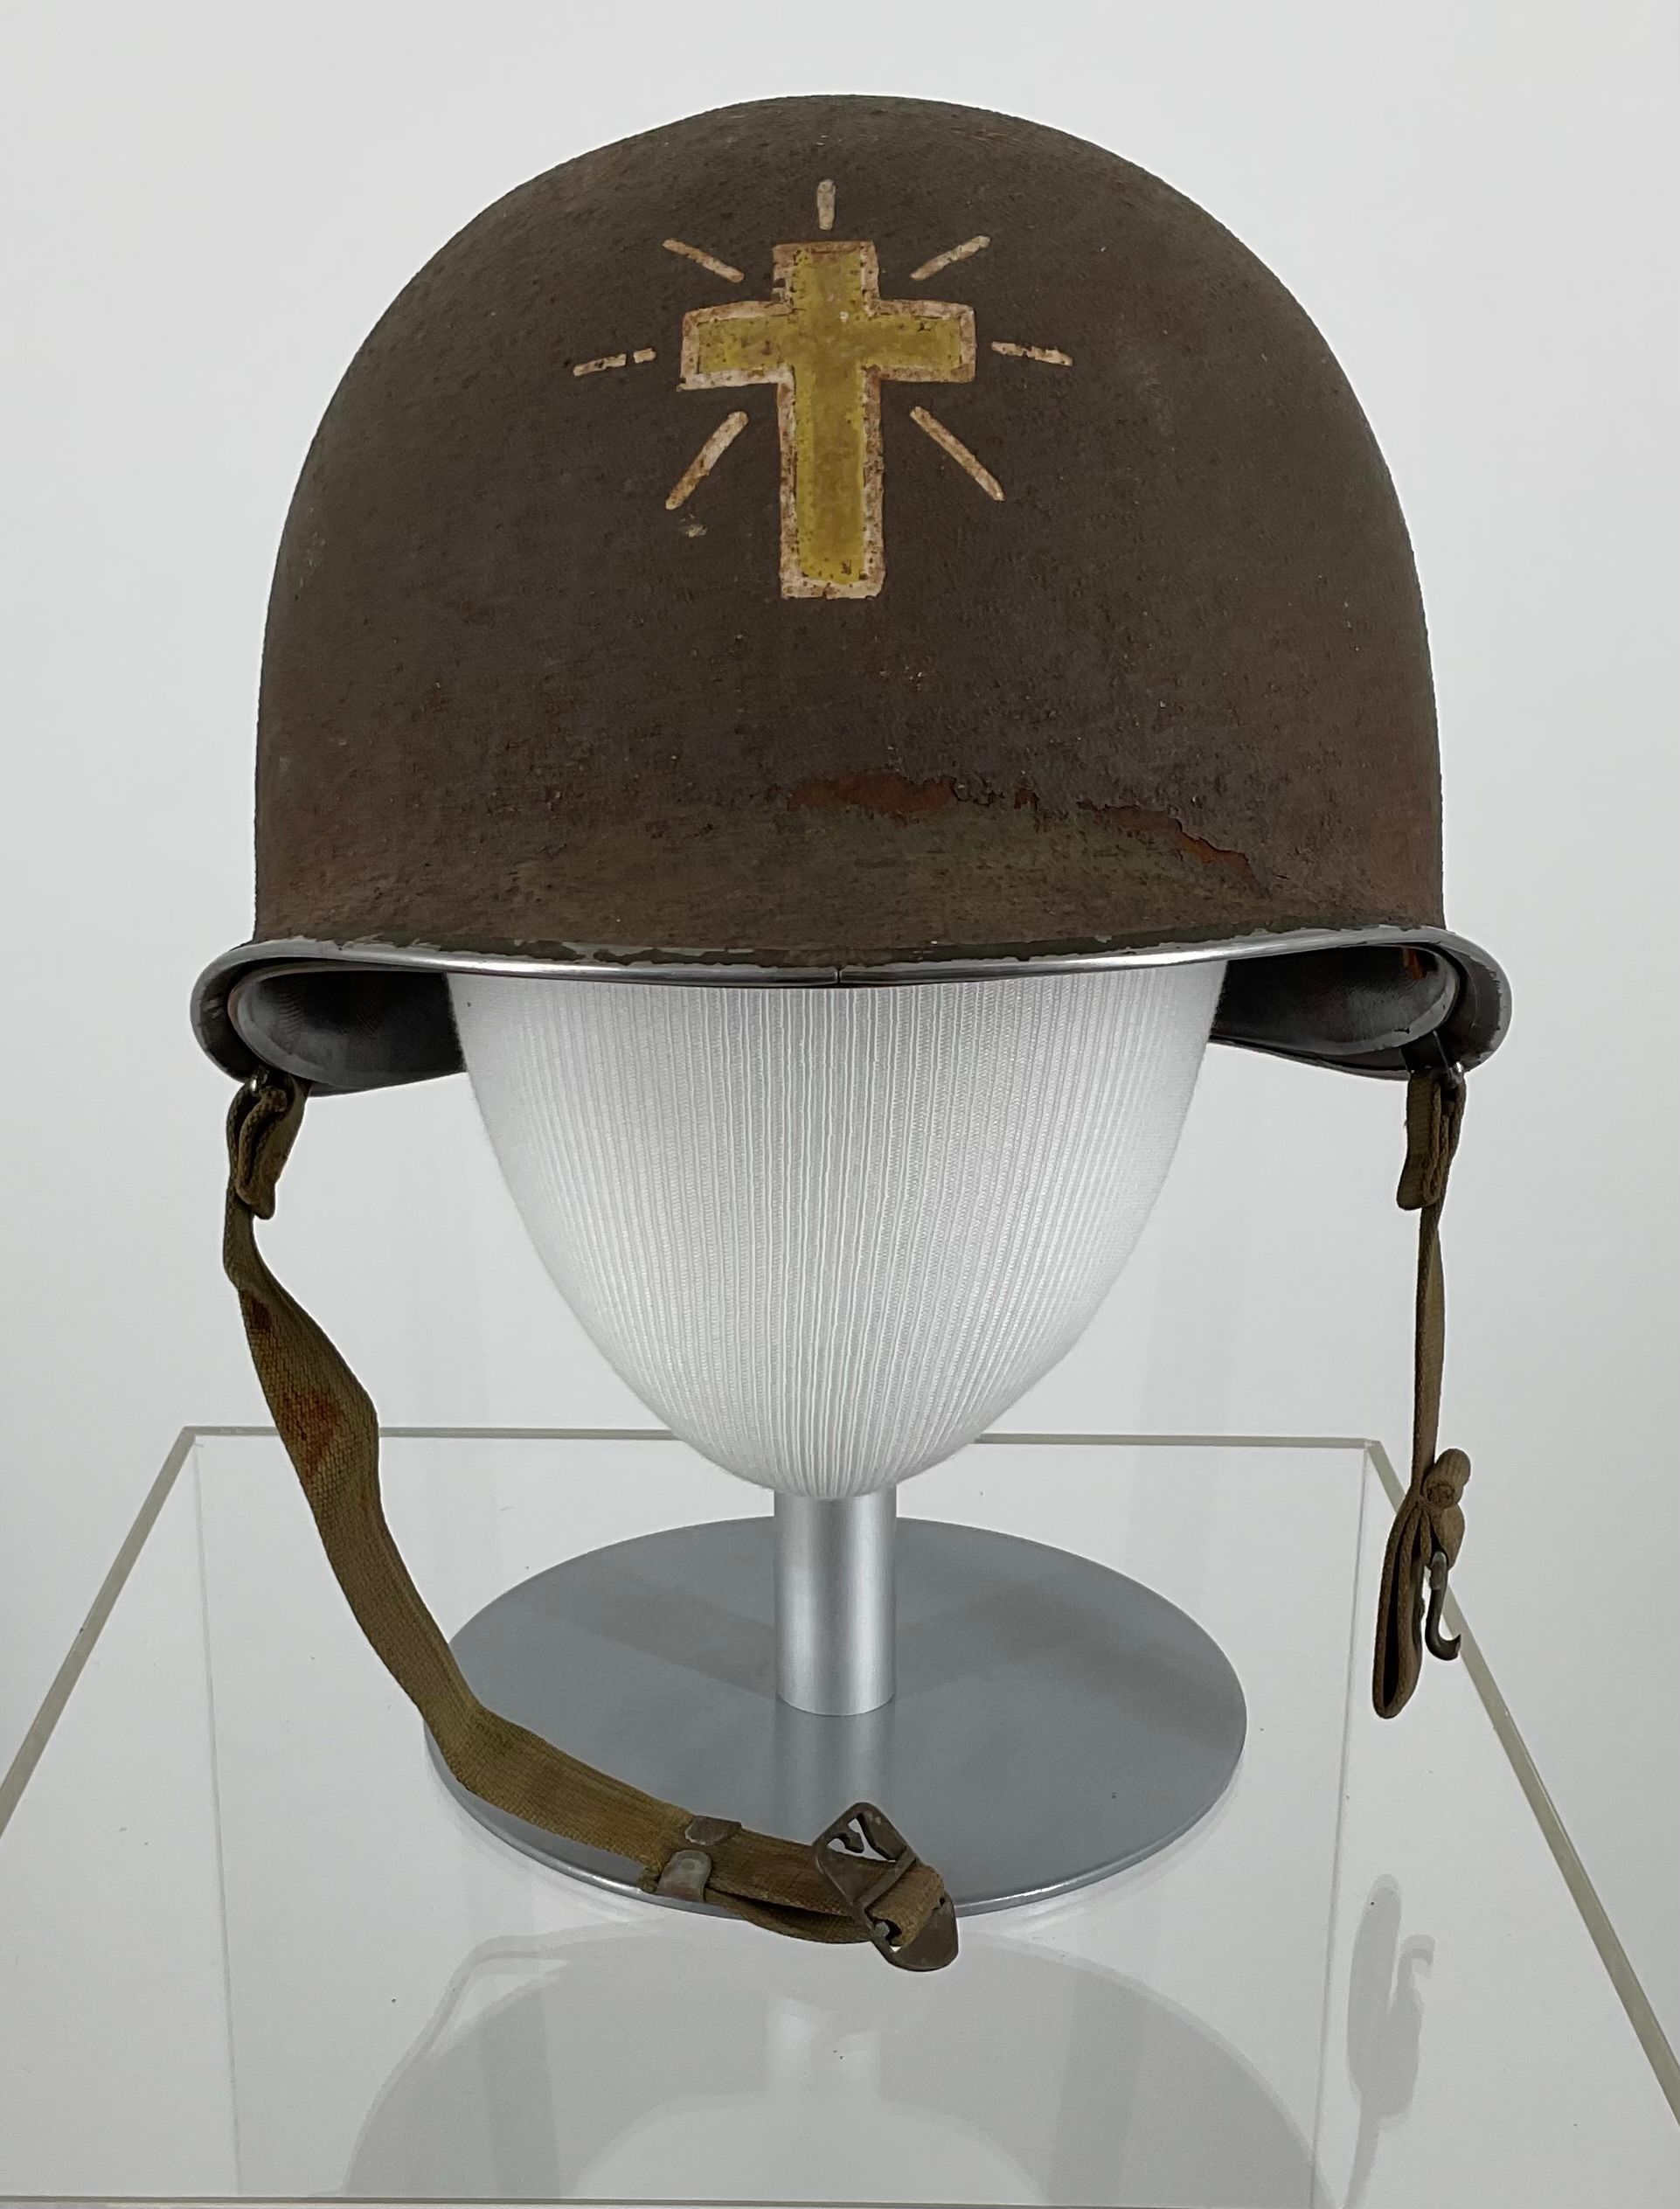 Primary Image of Chaplain's Helmet